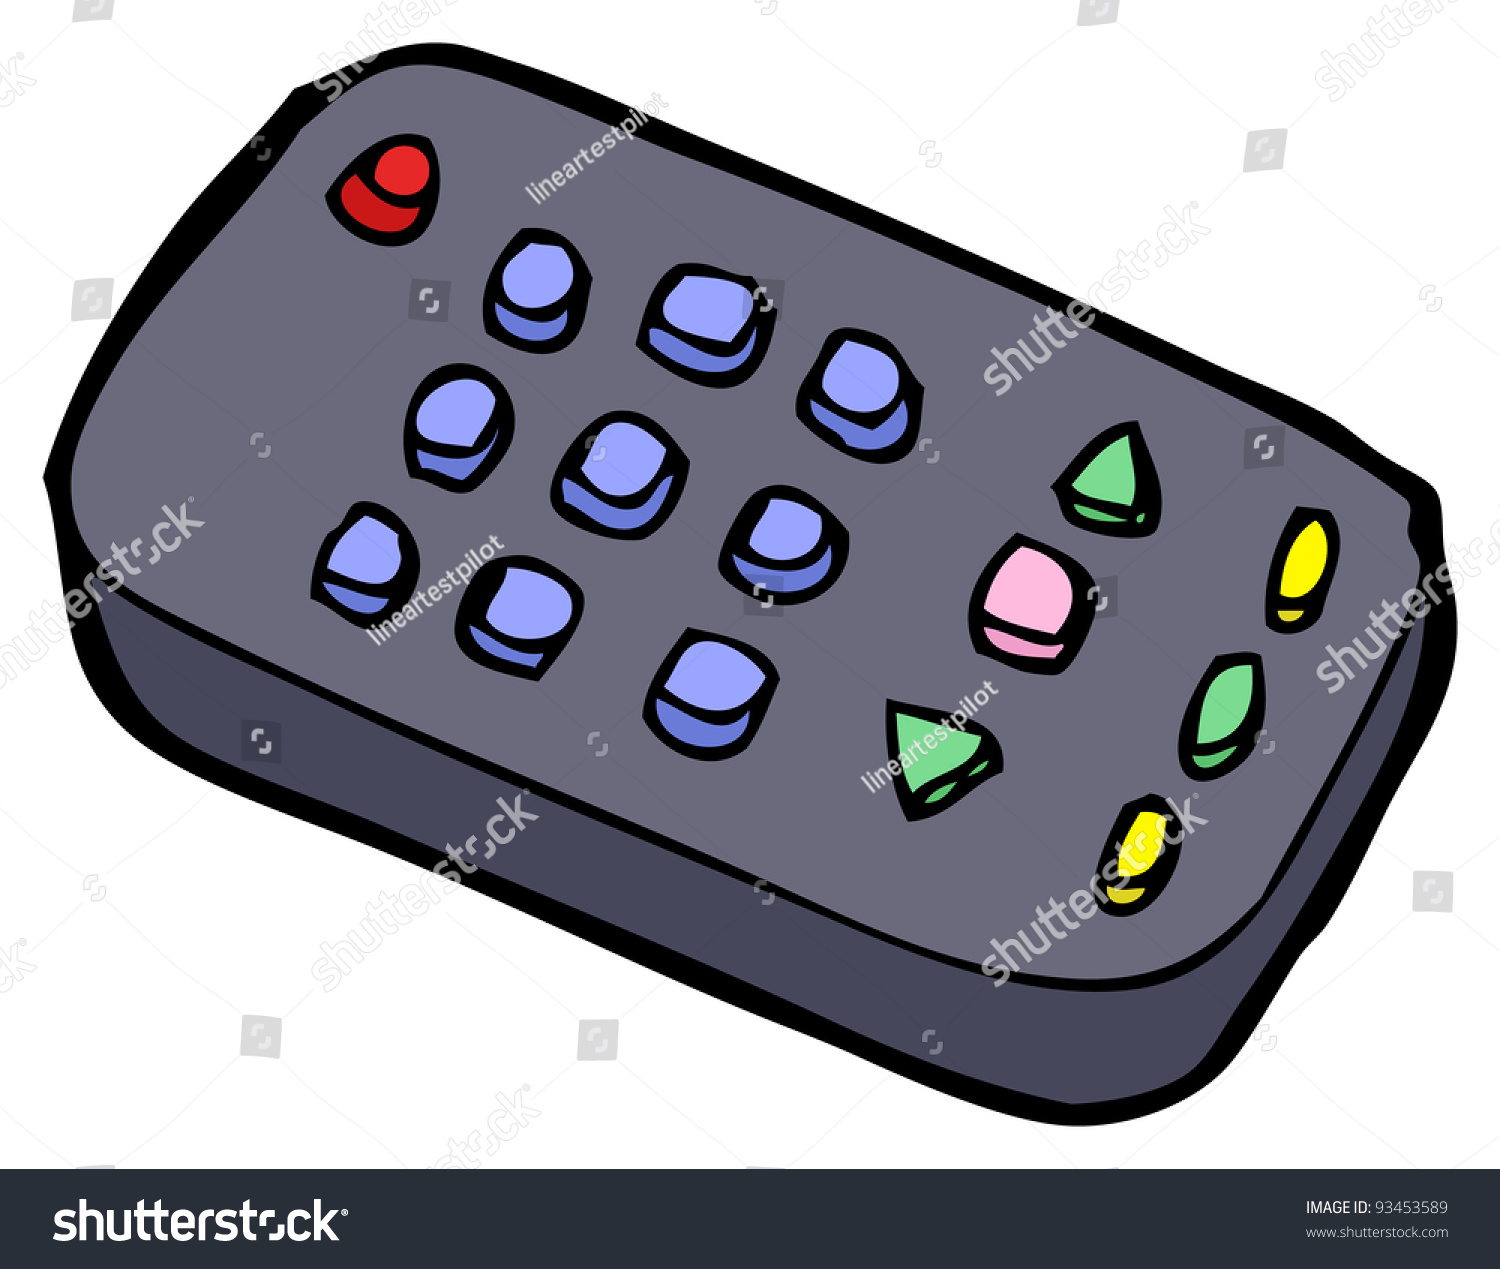 remote control cartoon